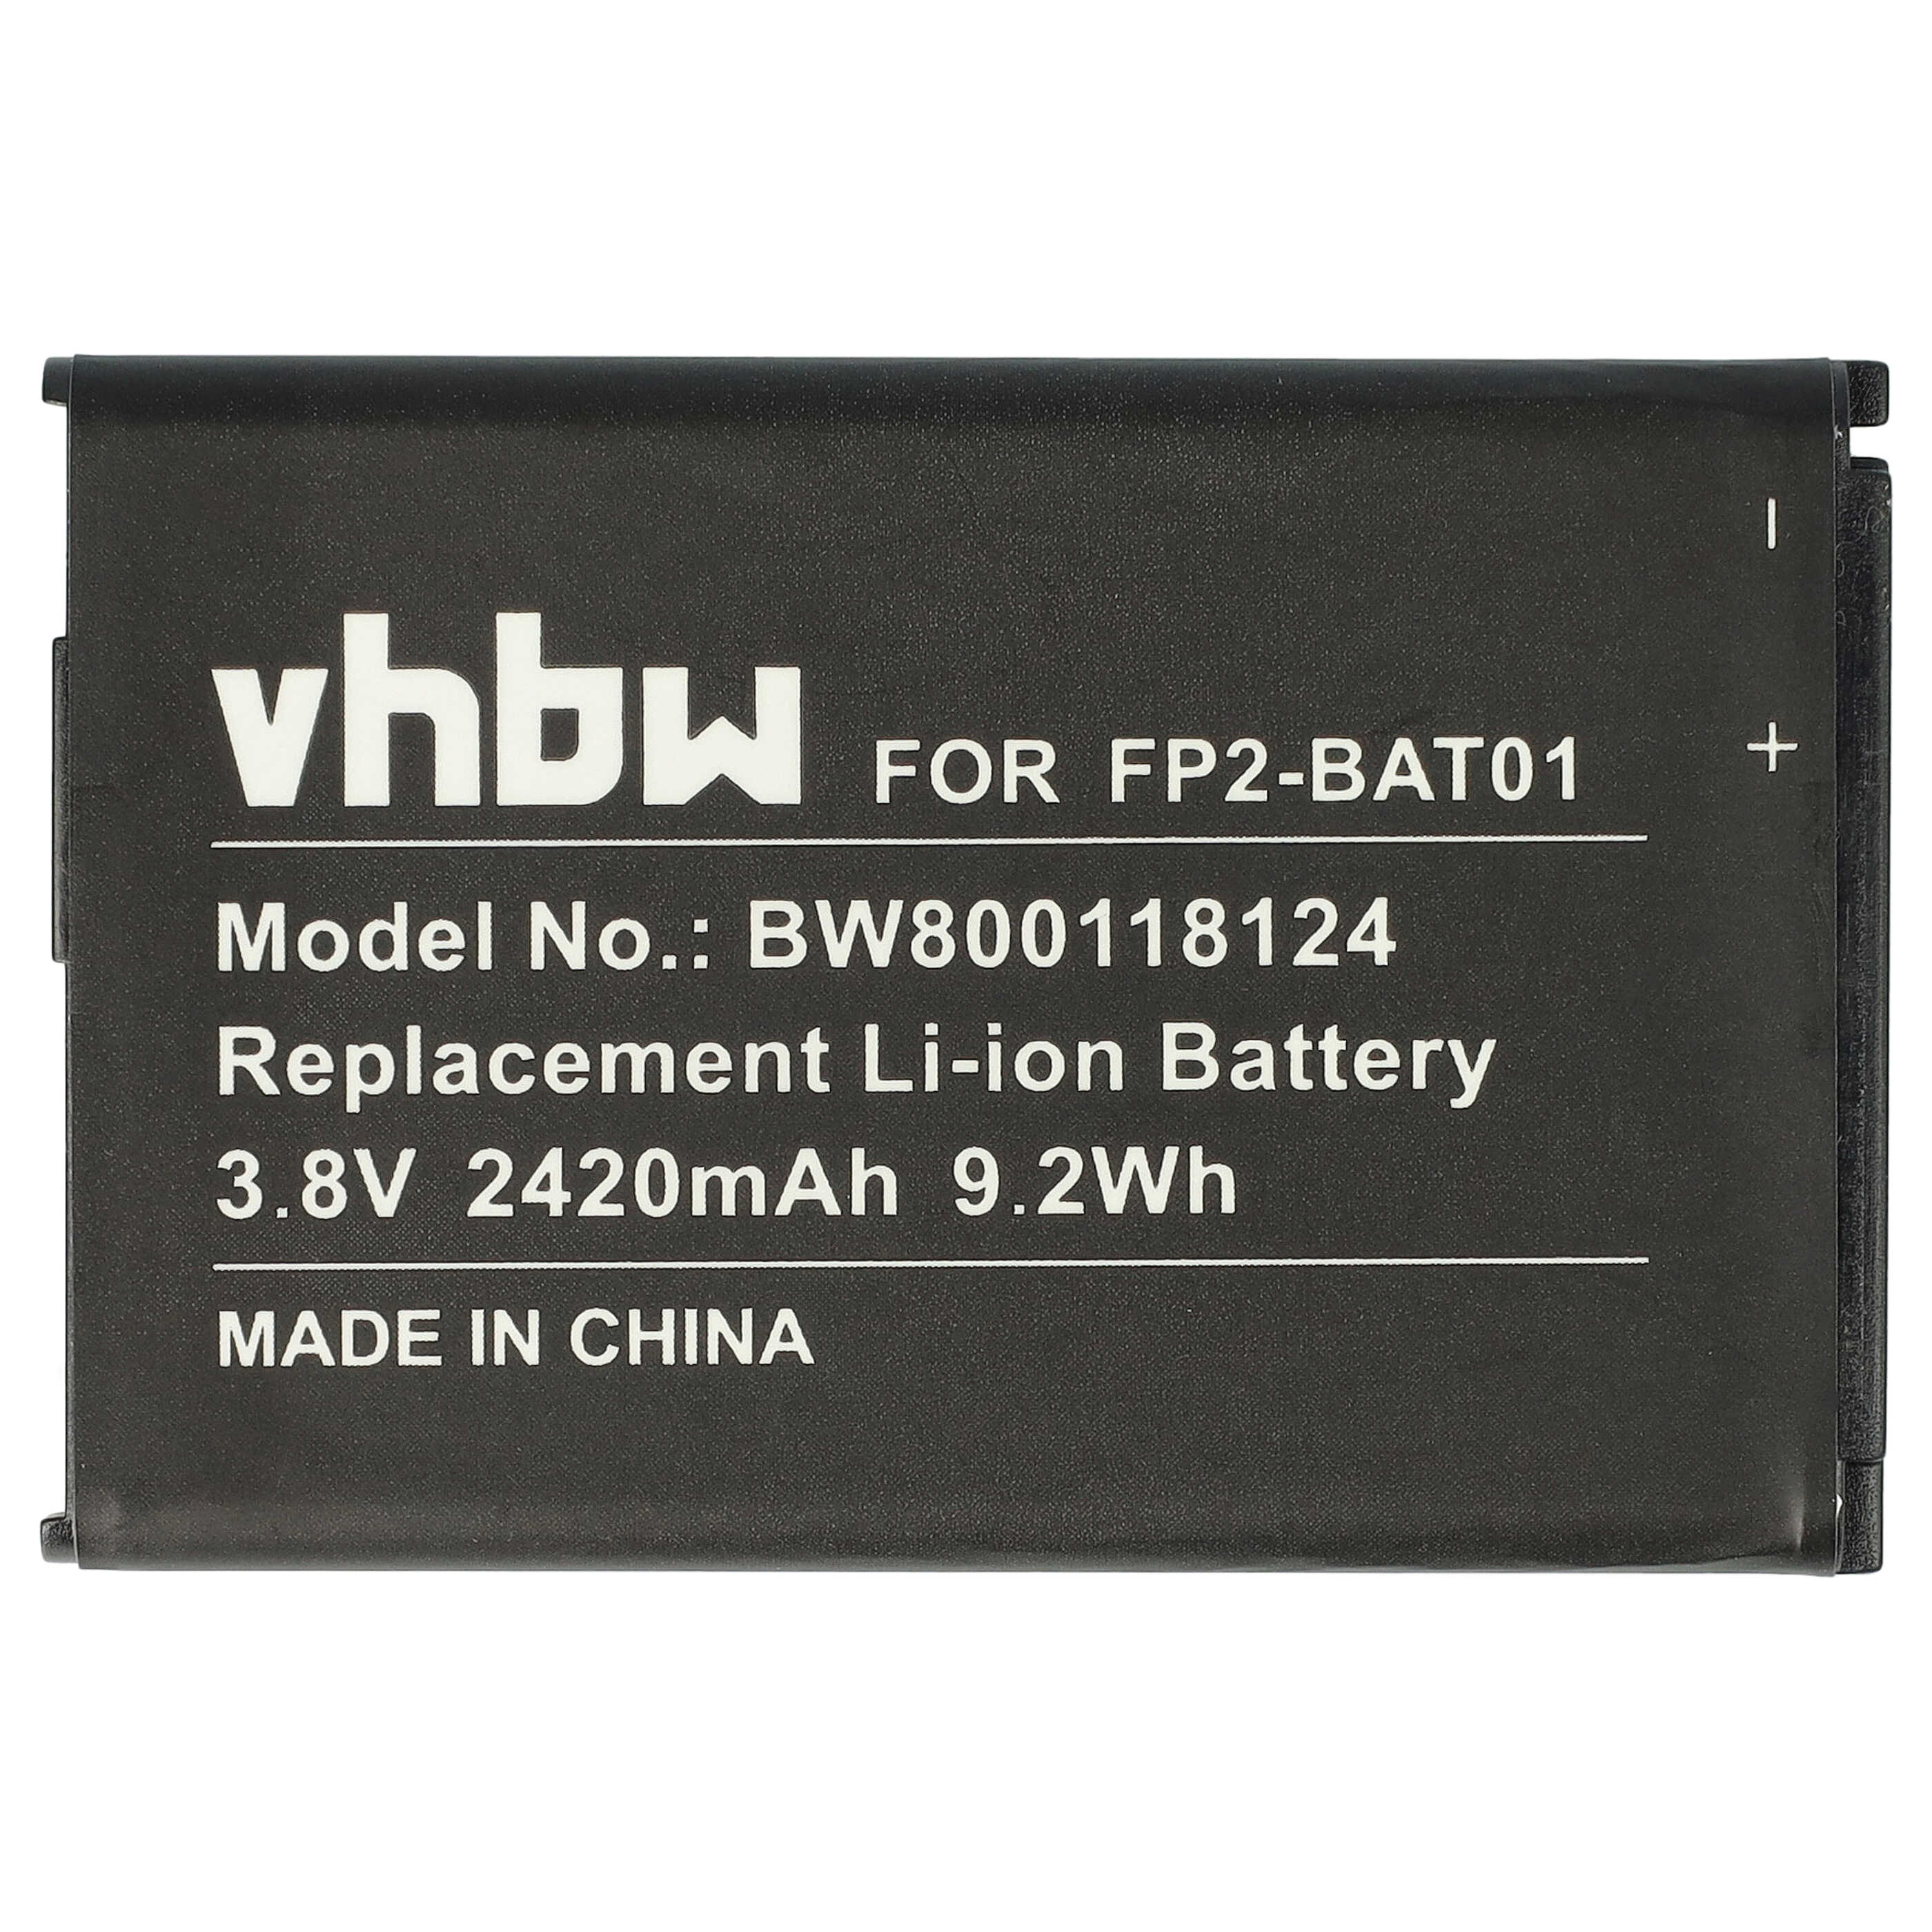 Akumulator bateria do telefonu smartfona zam. Fairphone FP2-BAT01 - 2420mAh, 3,8V, Li-Ion